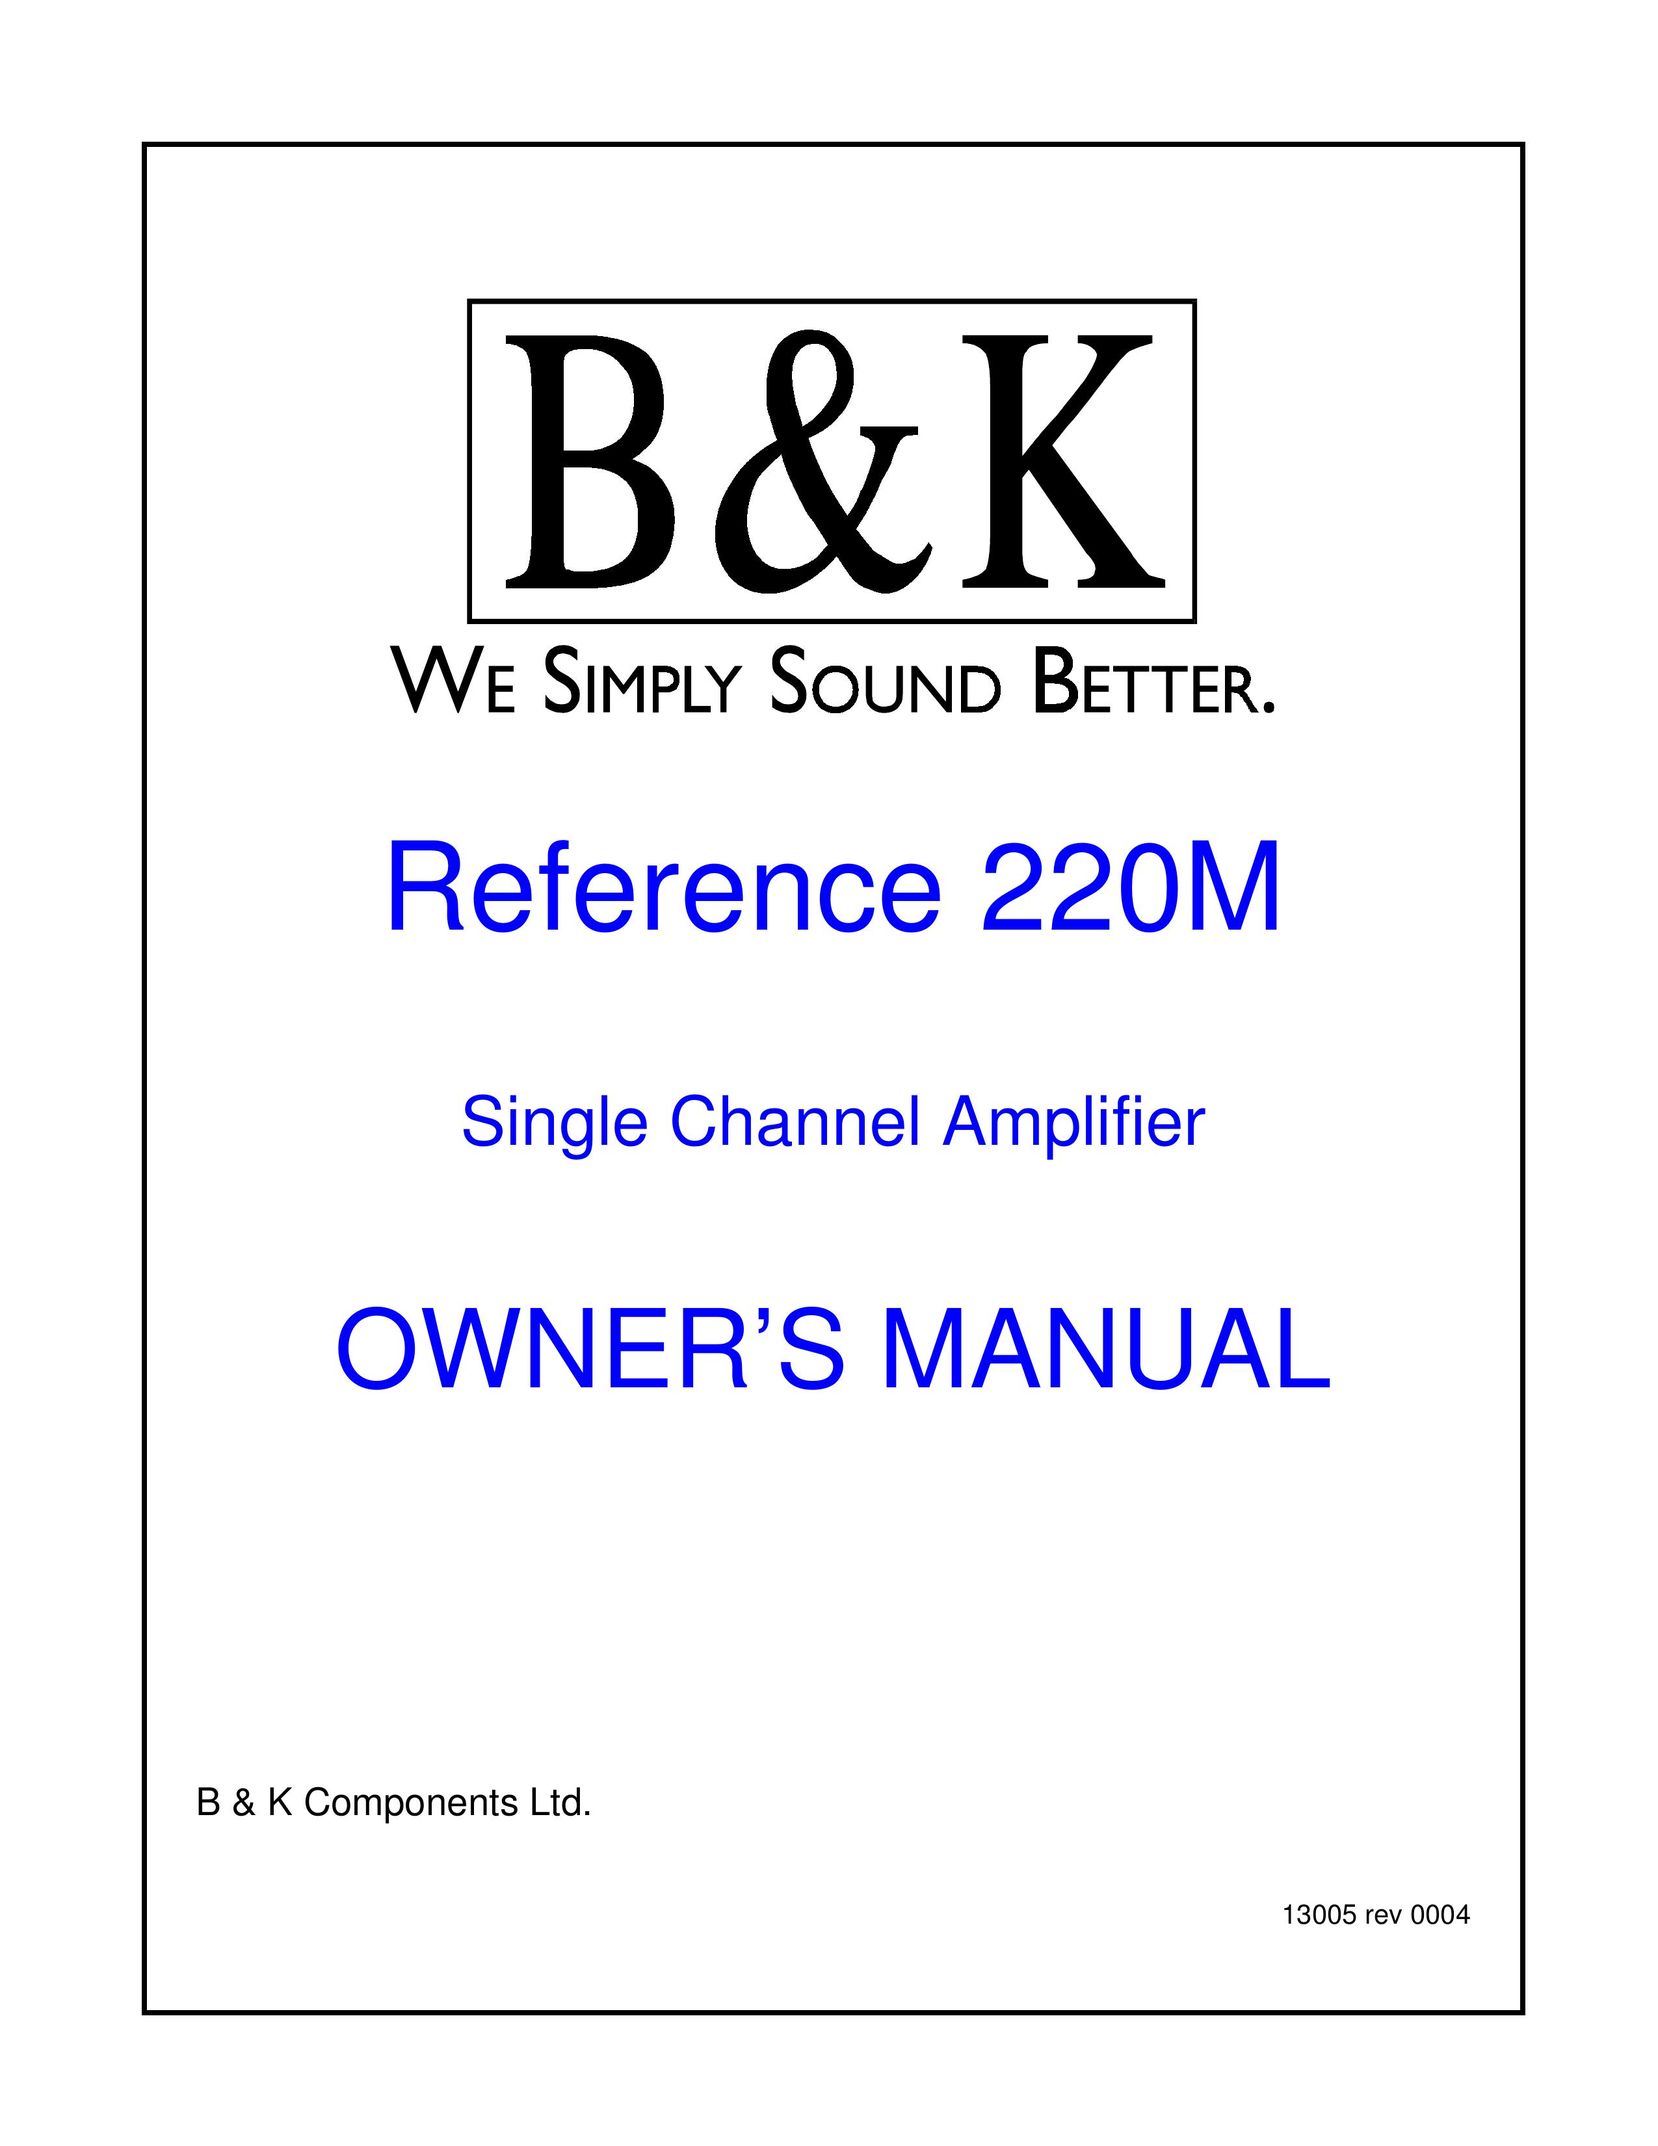 B&K 220M Stereo Amplifier User Manual